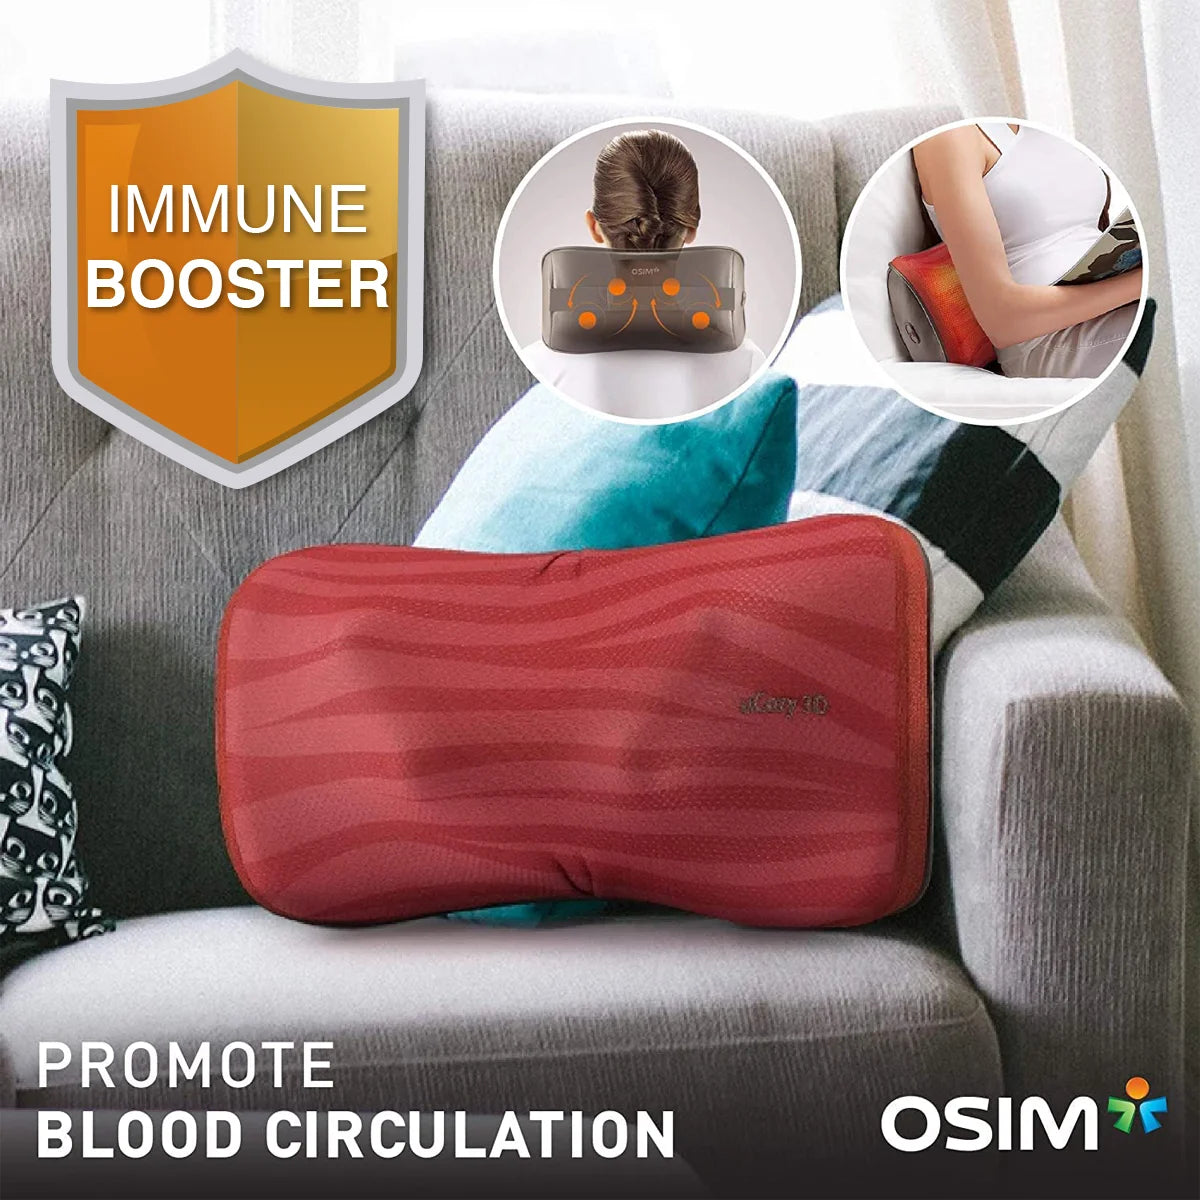 uCozy 3D Shoulder Massager by OSIM Information Image